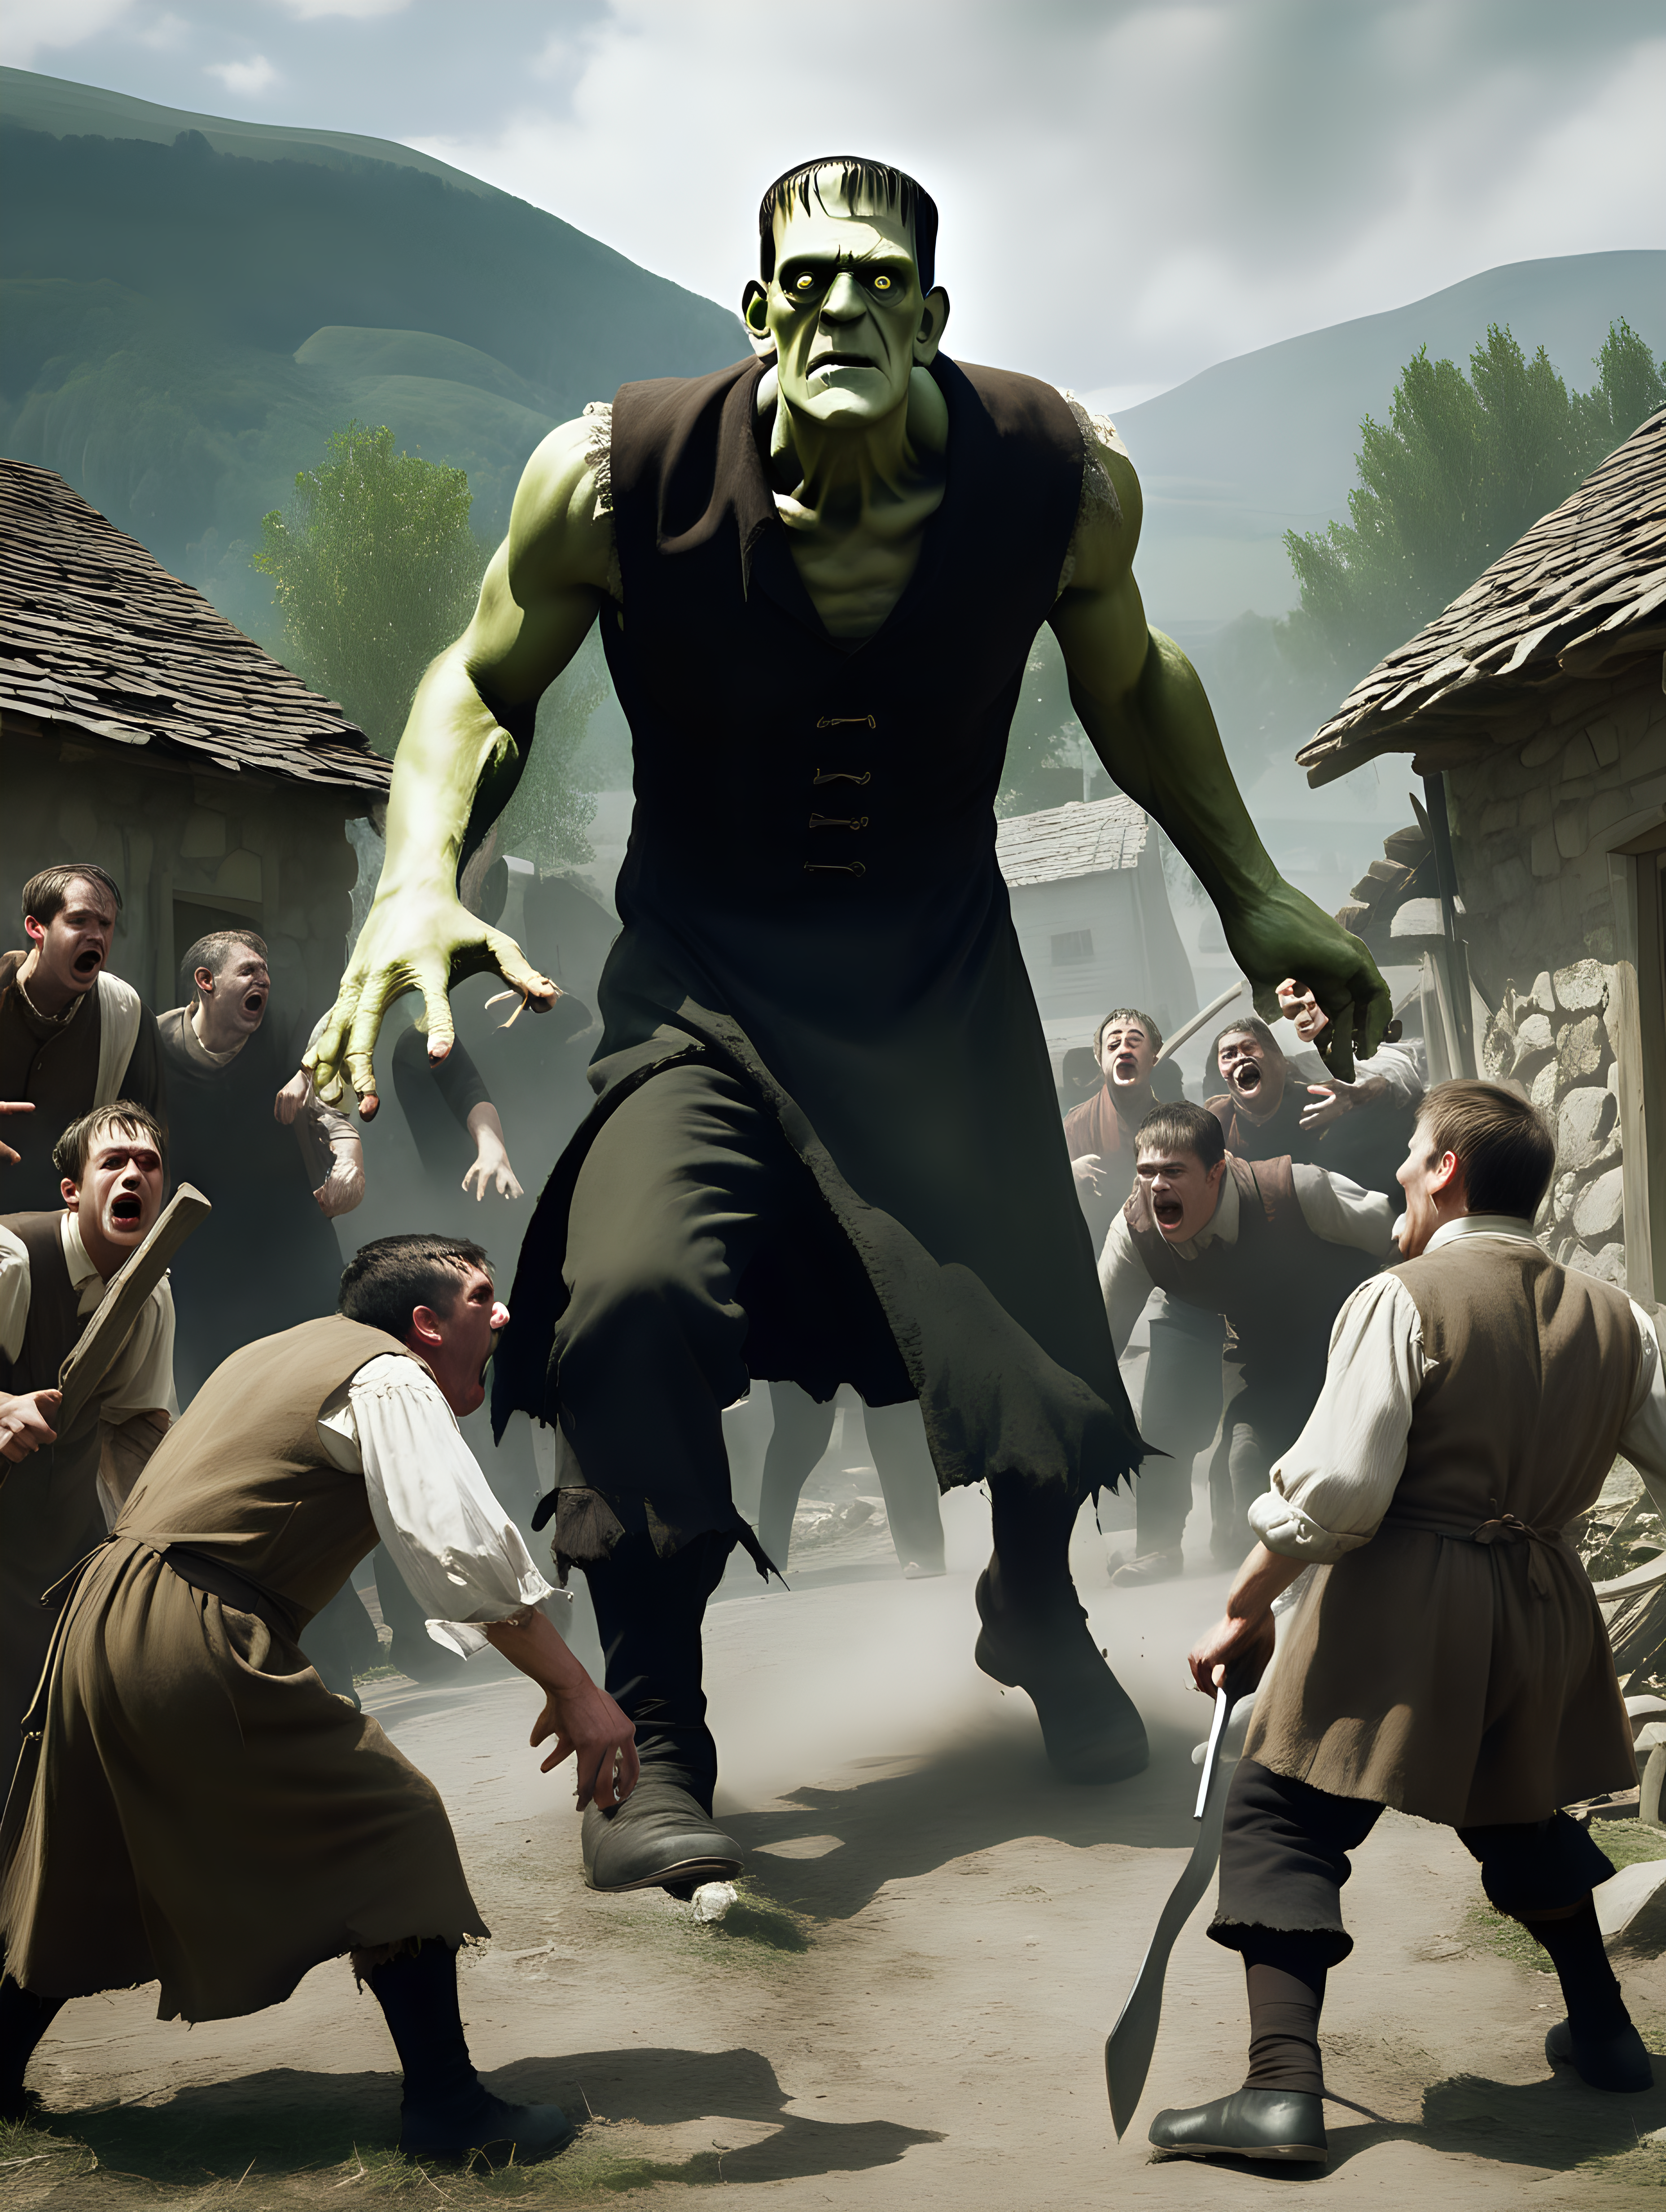 Frankenstein attacking villagers